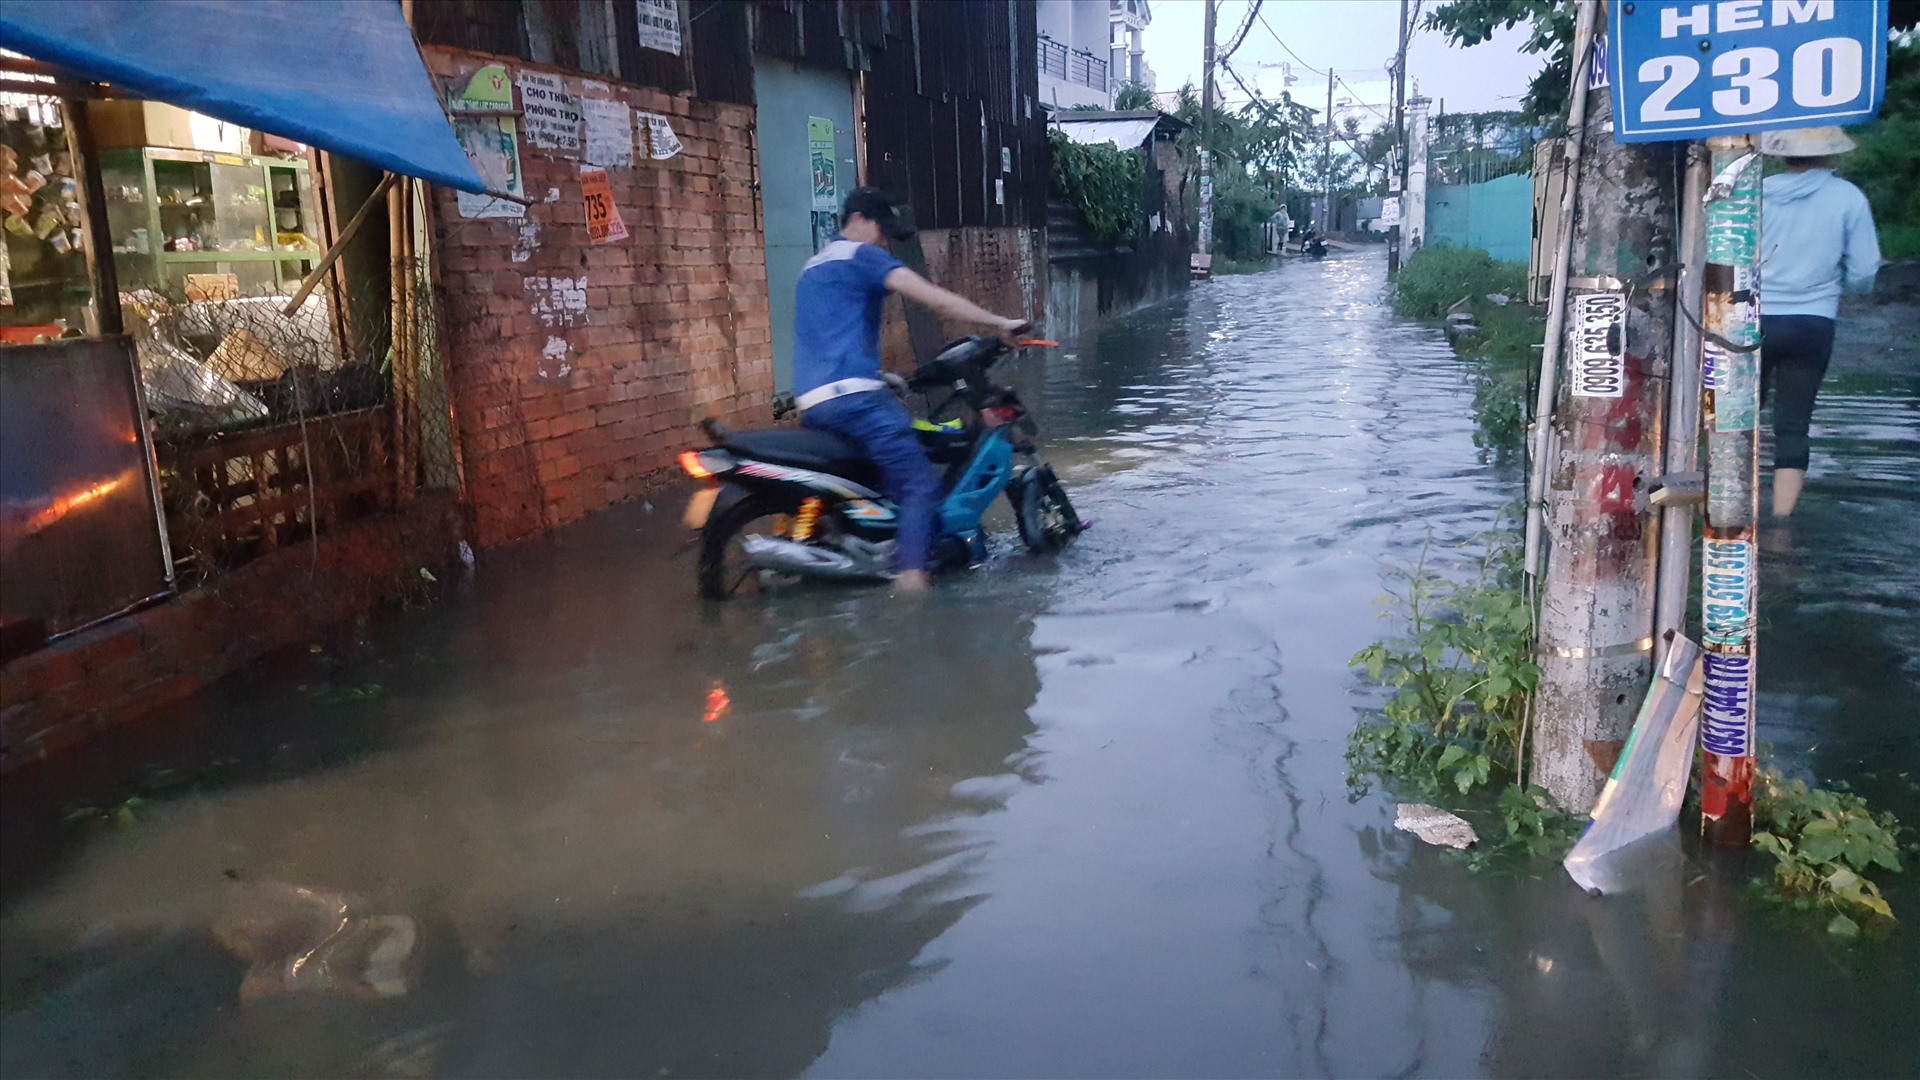 Sau cơn mưa, đường vào hẻm 230 đường Hồ Ngọc Lãm, quận Bình Tân ngập sâu trong nước.